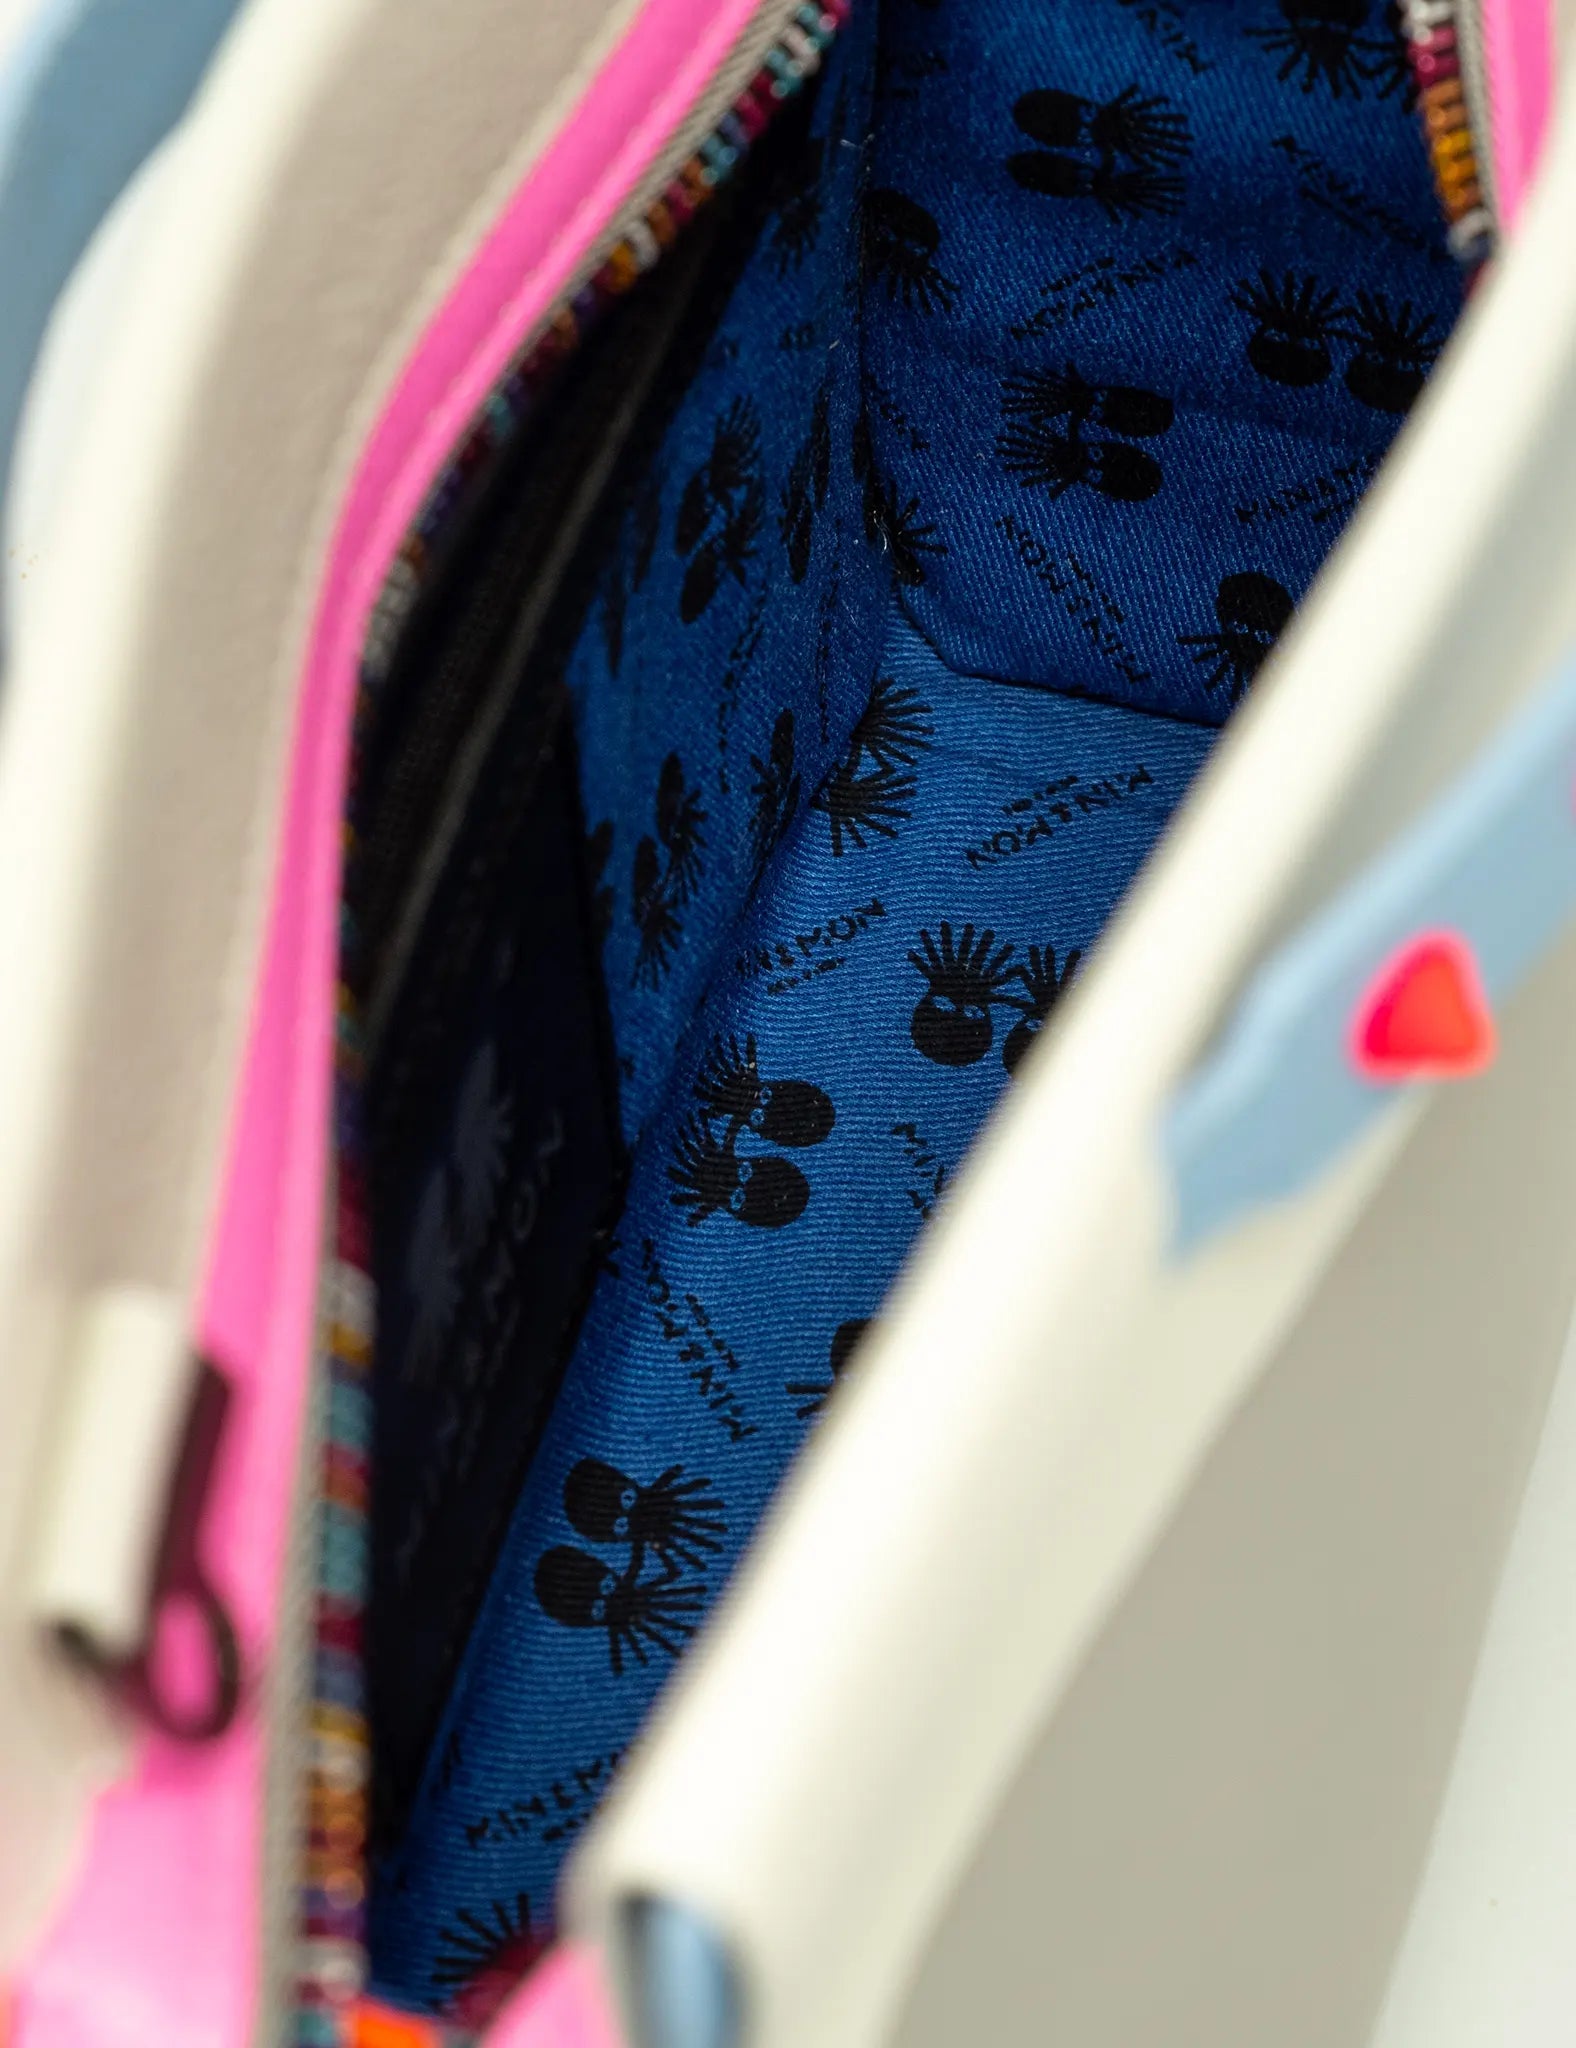 Vali Crossbody Handbag - Small - Inside view